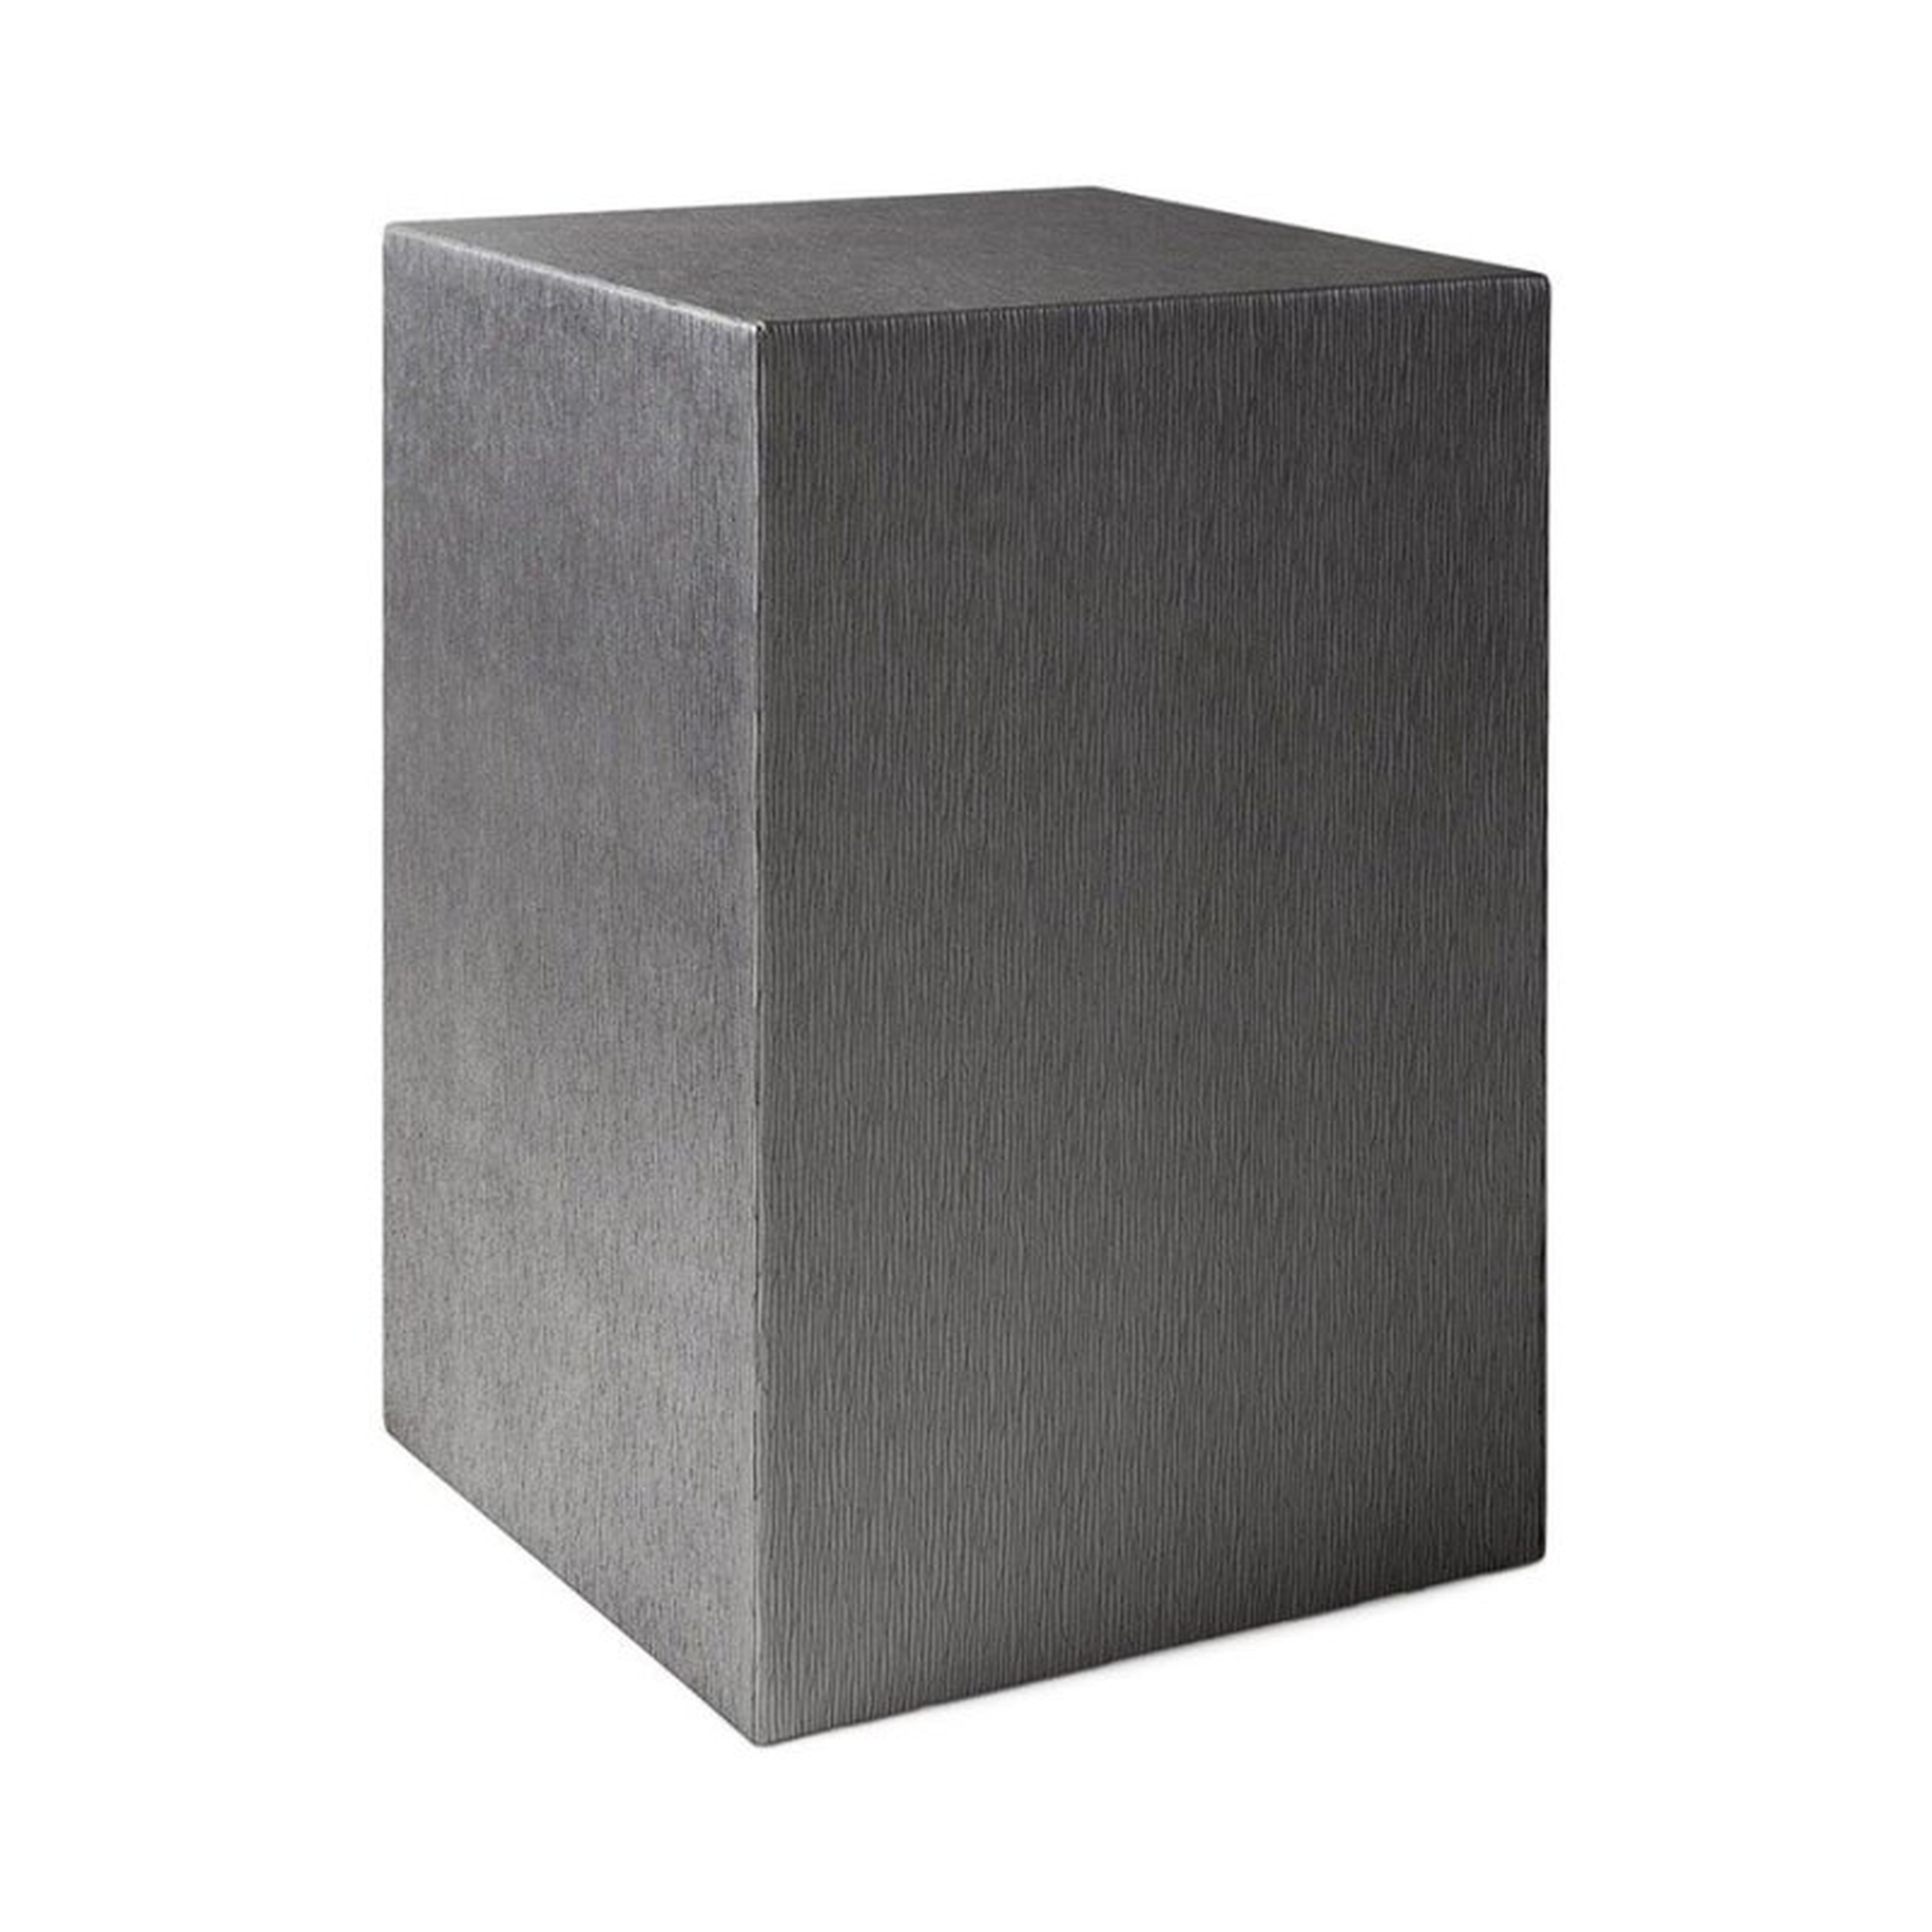 Square Feathers Pucci Table Arbor Gray Color: Gray - Perigold